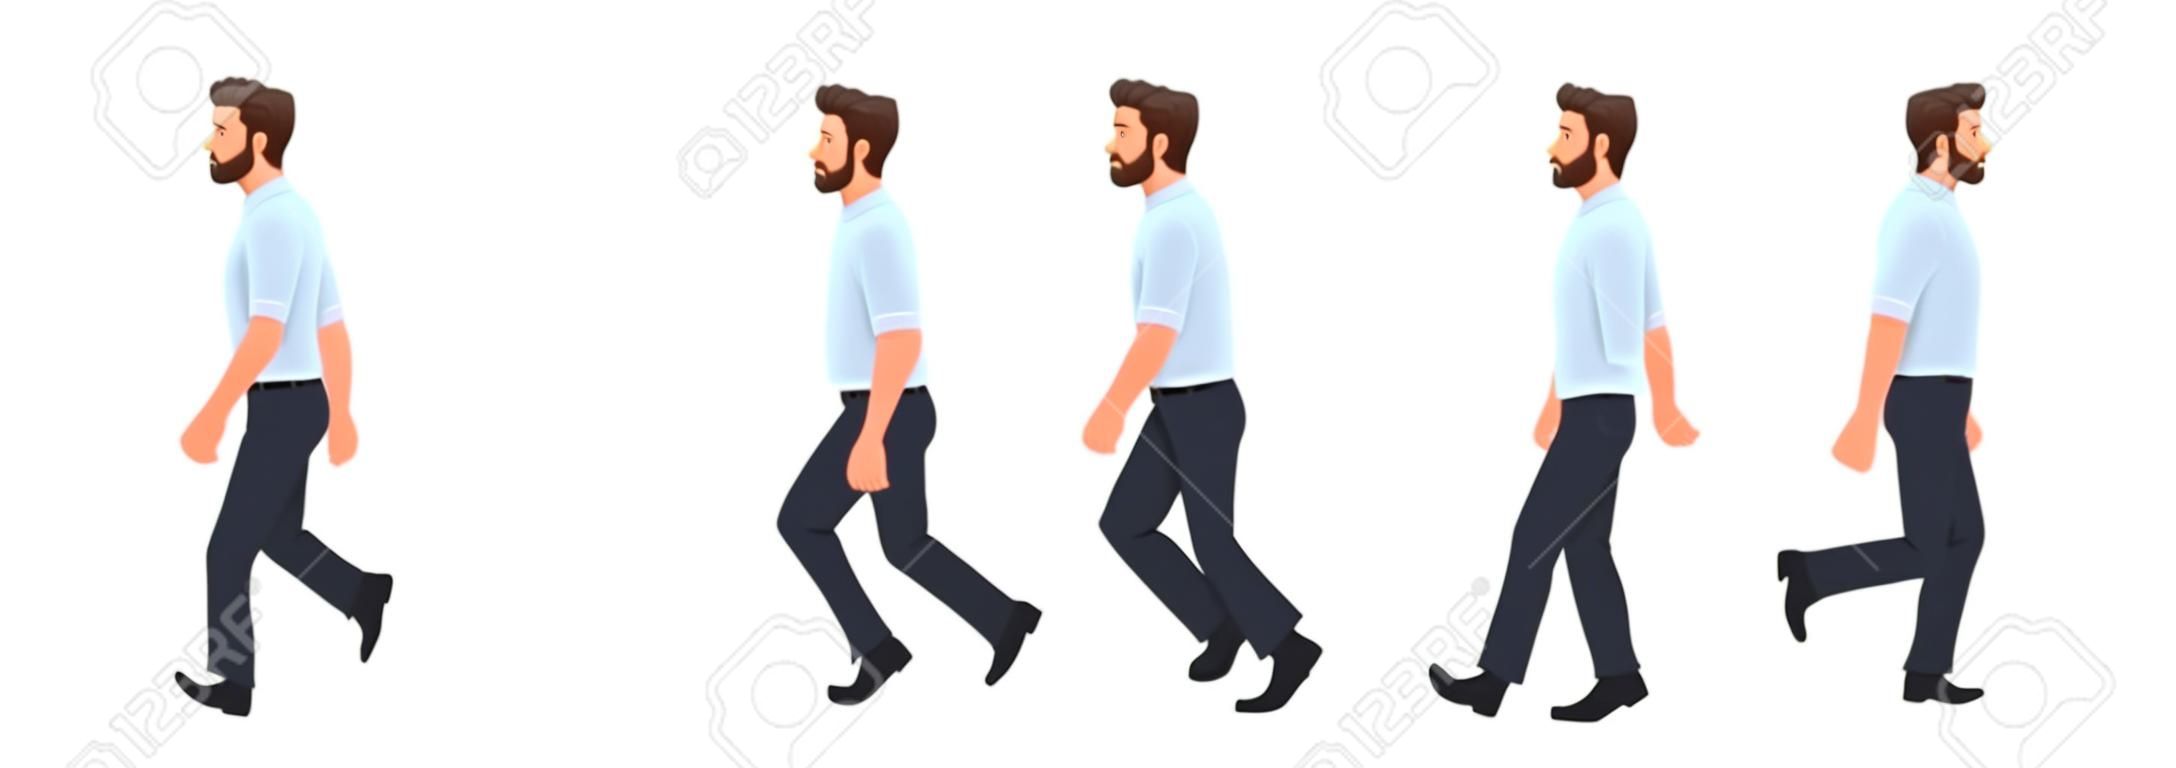 Gehende Animation des Manncharakters. Geschäftsmann geht, ein Schritt-für-Schritt-Zyklus von Bildern. Vektor-Illustration im Cartoon-Stil